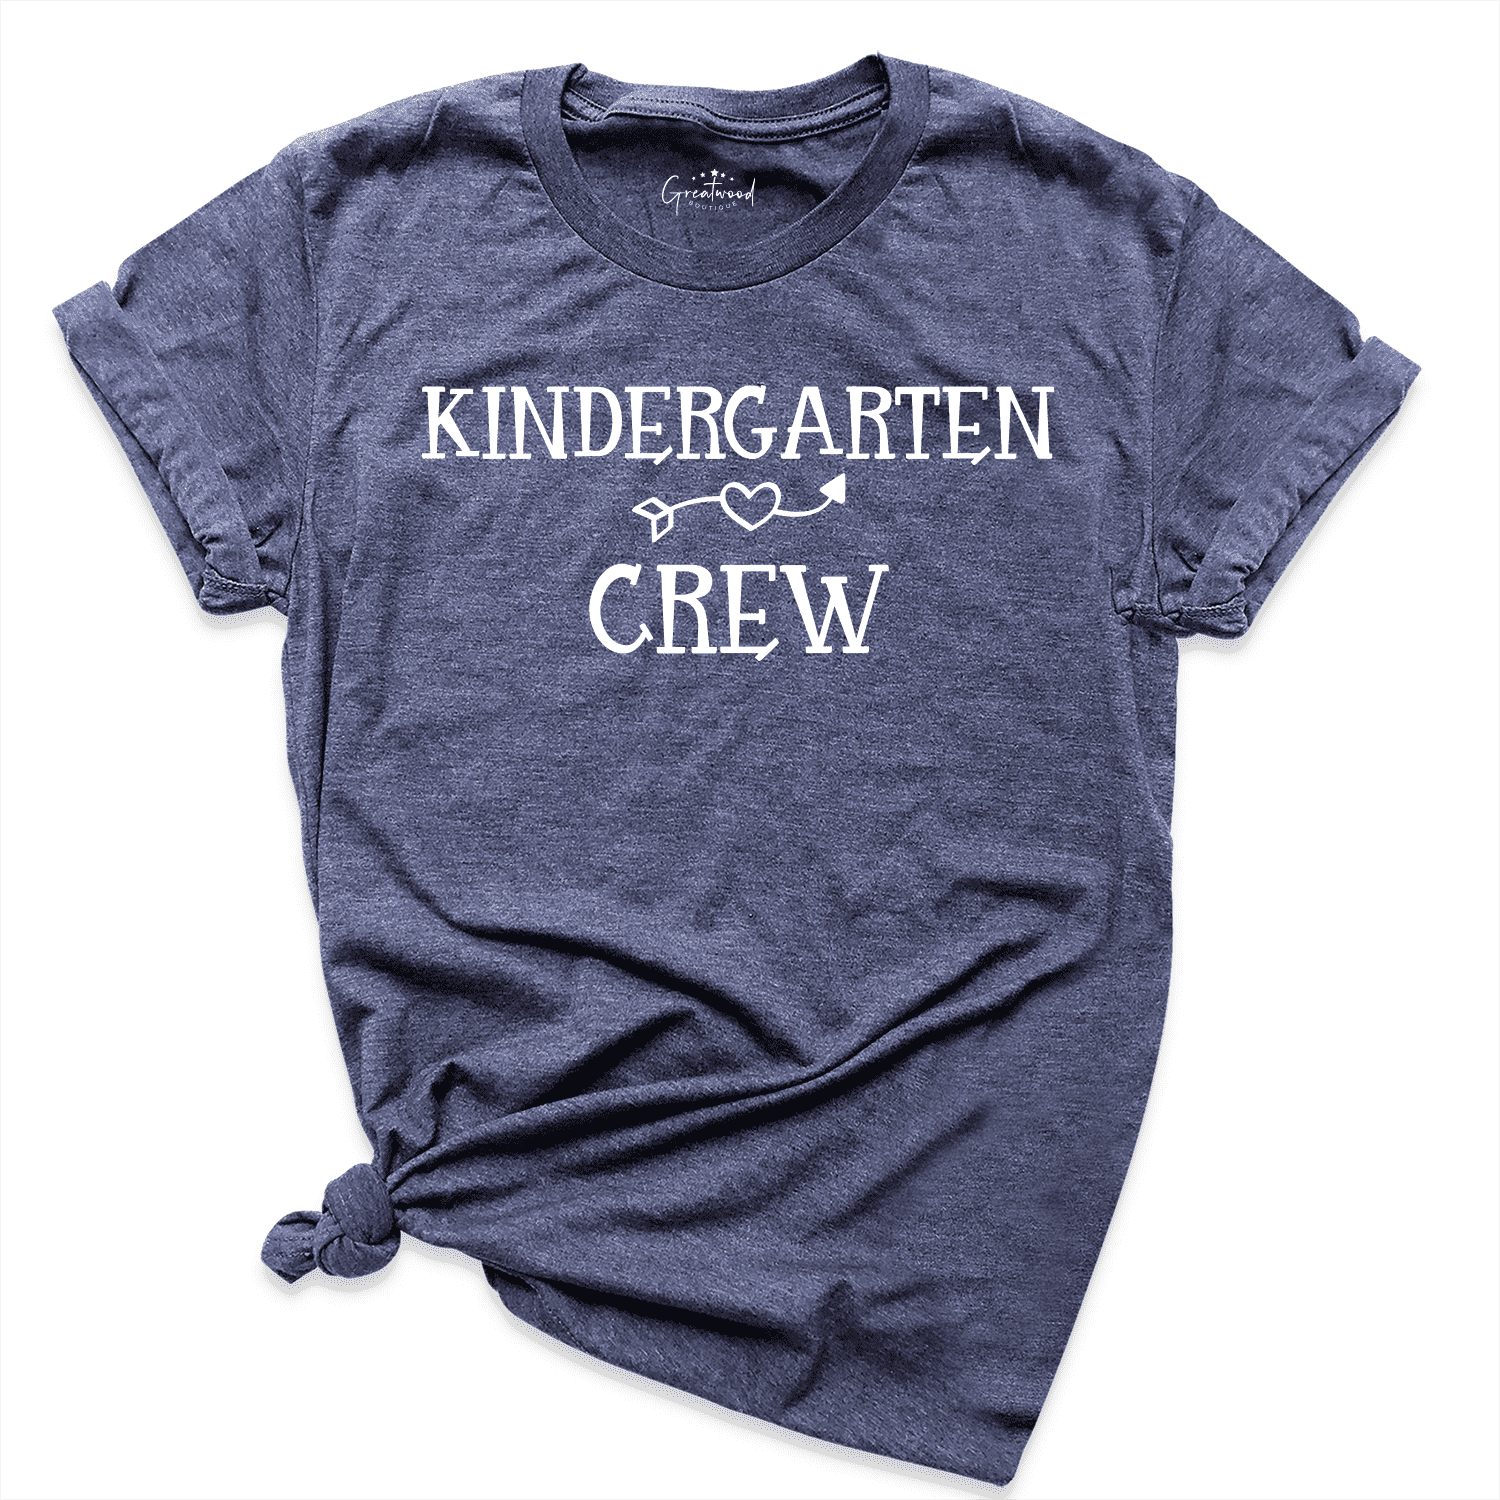 Kindergarten Crew Shirt Navy - Greatwood Boutique